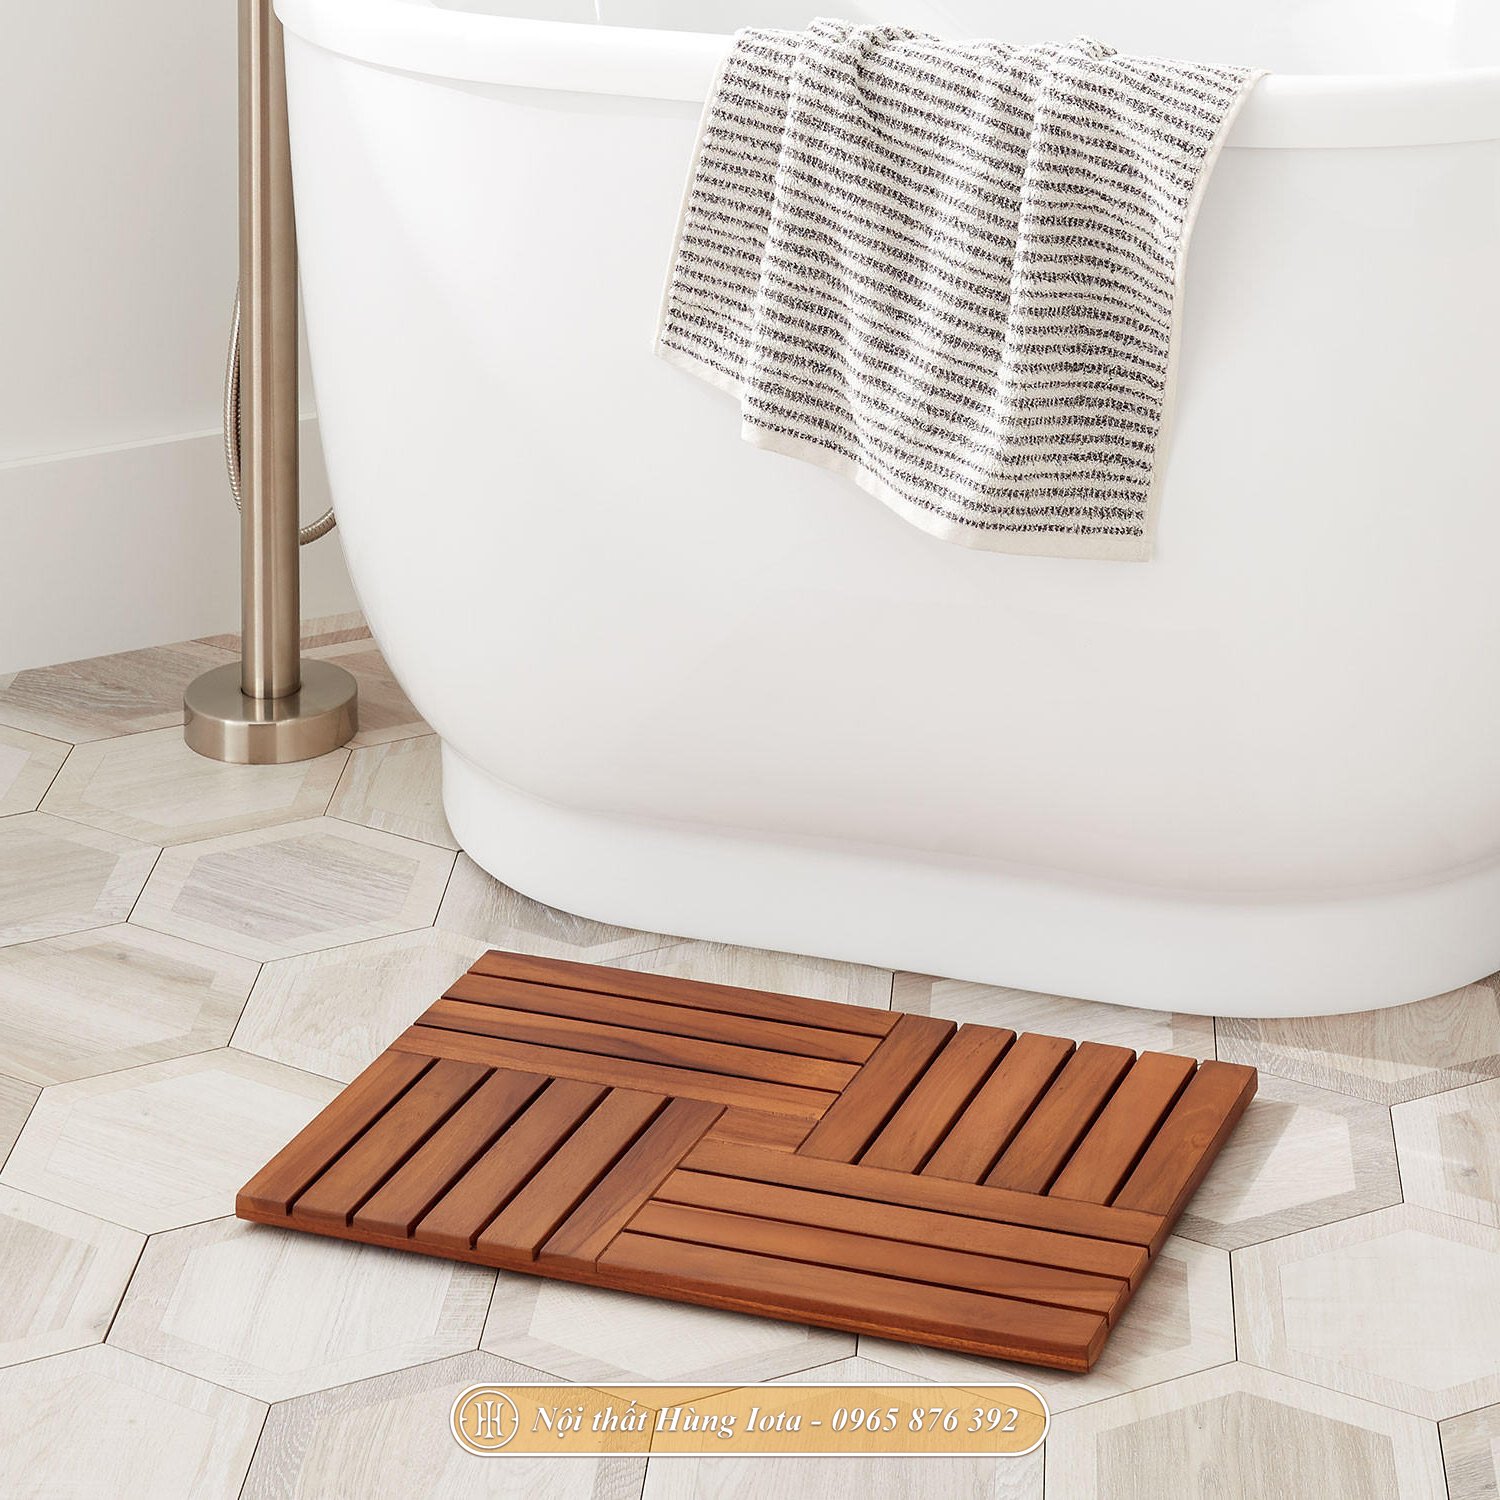 Tấm lót sàn phòng tắm bằng gỗ chống thấm nước cao cấp, giá rẻ KG53